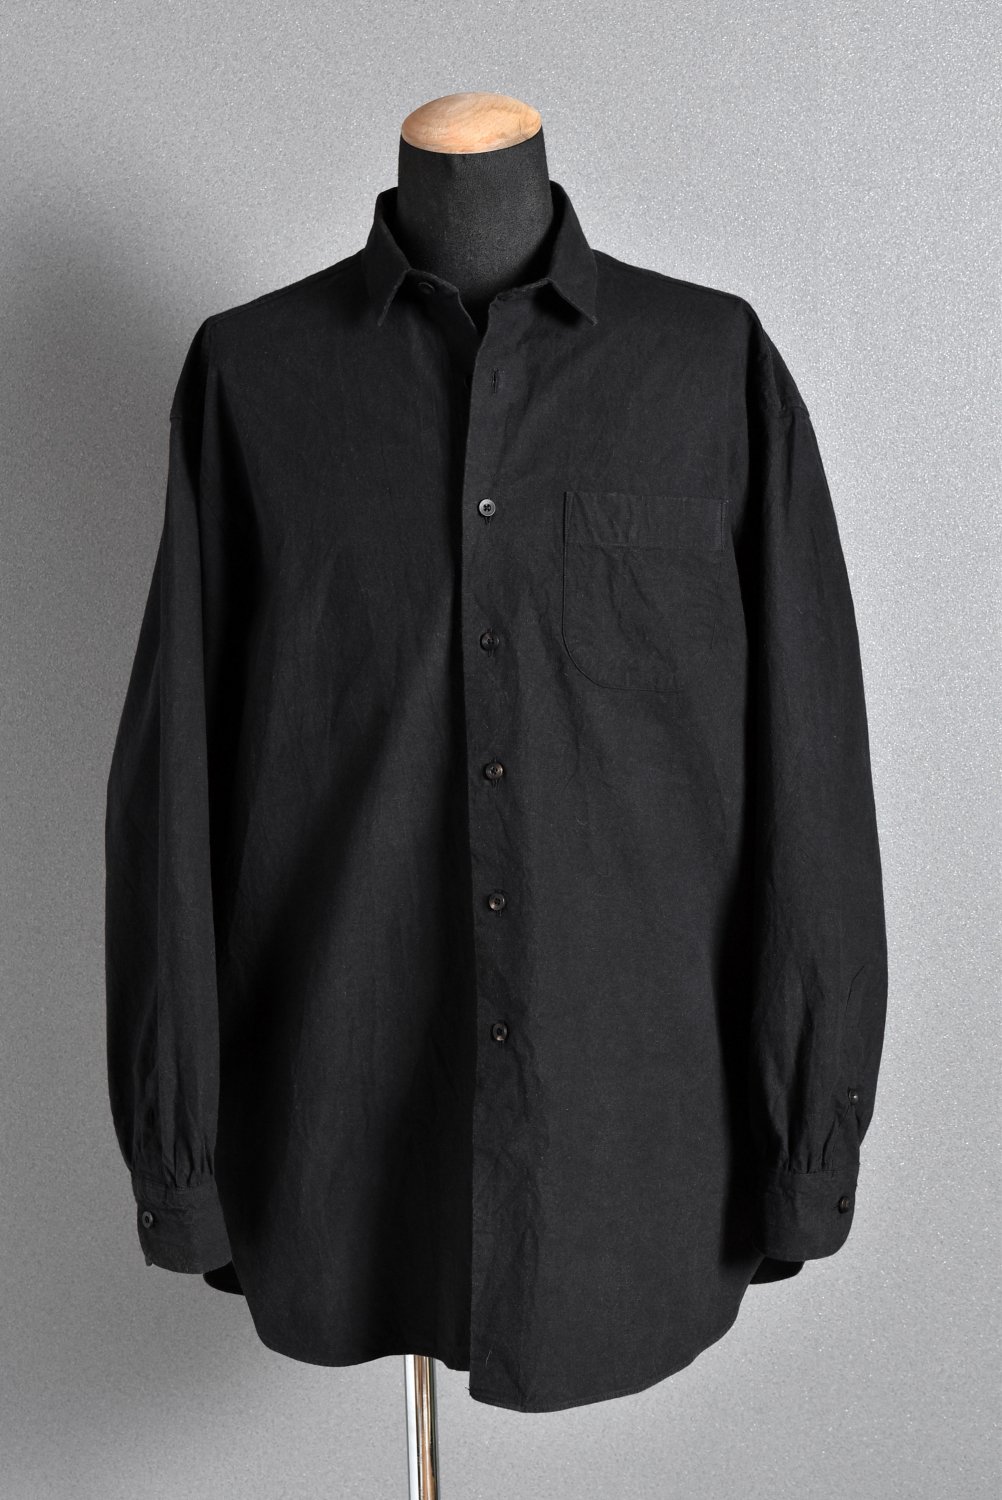 Porter Classic ローカル ブラックシャツ L 黒 / ブランド古着の ...